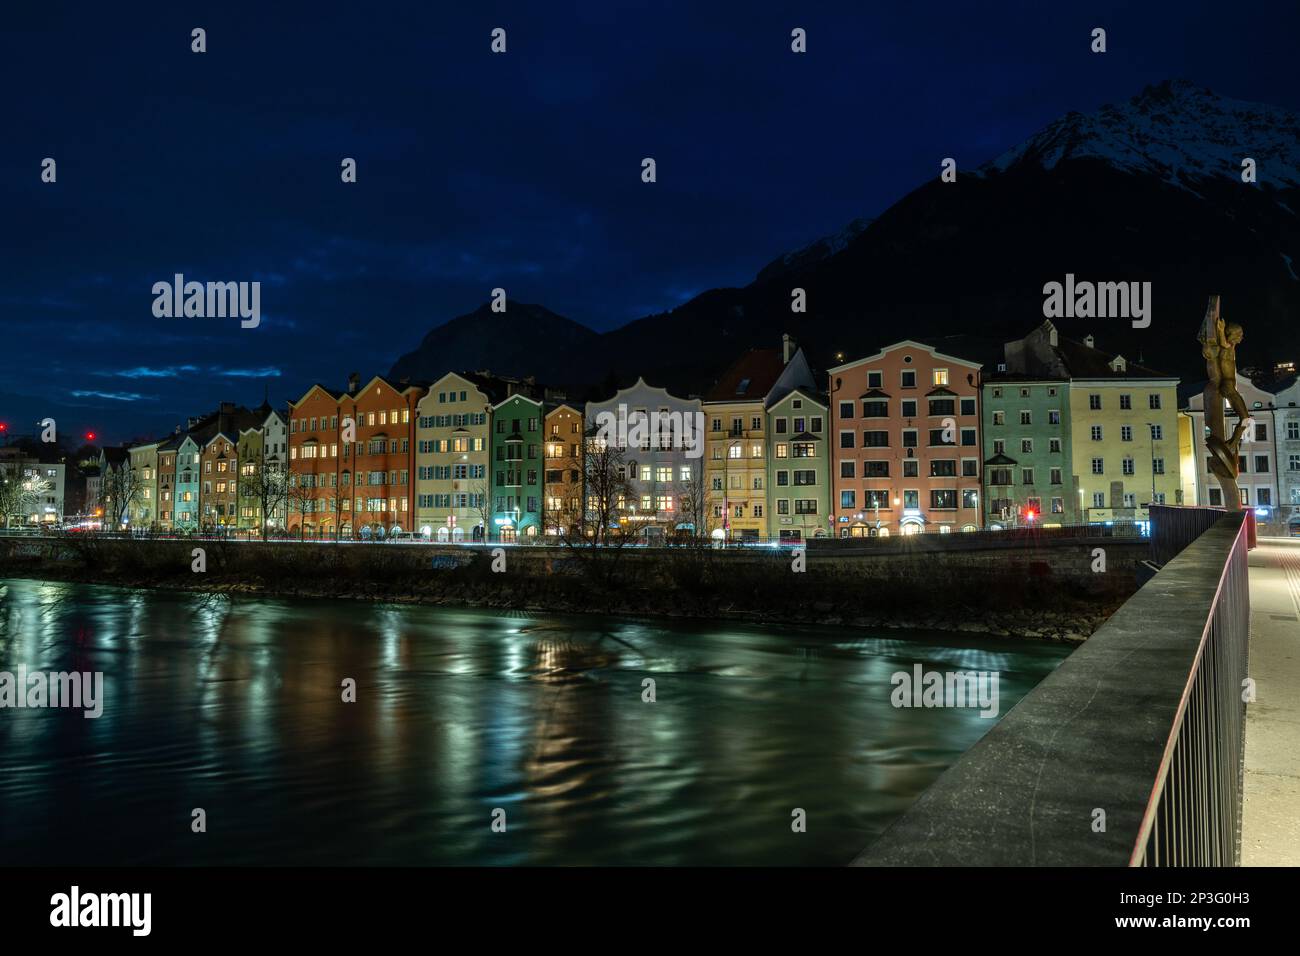 Belle case colorate fiancheggiano la riva del fiume della storica città di Innsbruck, si trova in una valle di montagne innevate Foto Stock